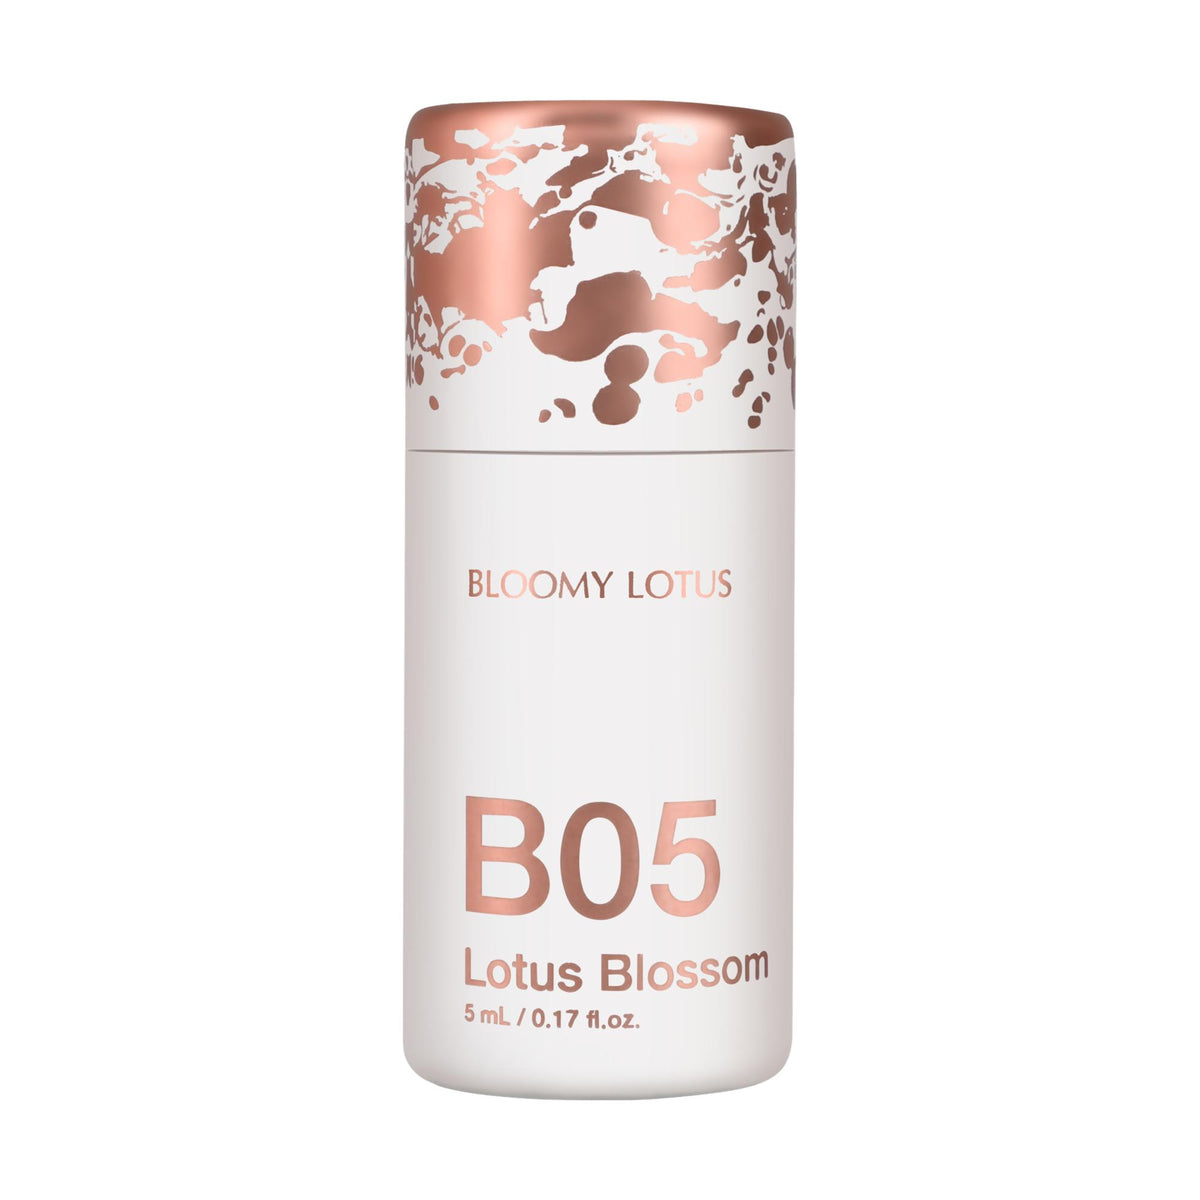 B05 Lotus Blossom Essential Oil, 5 ml